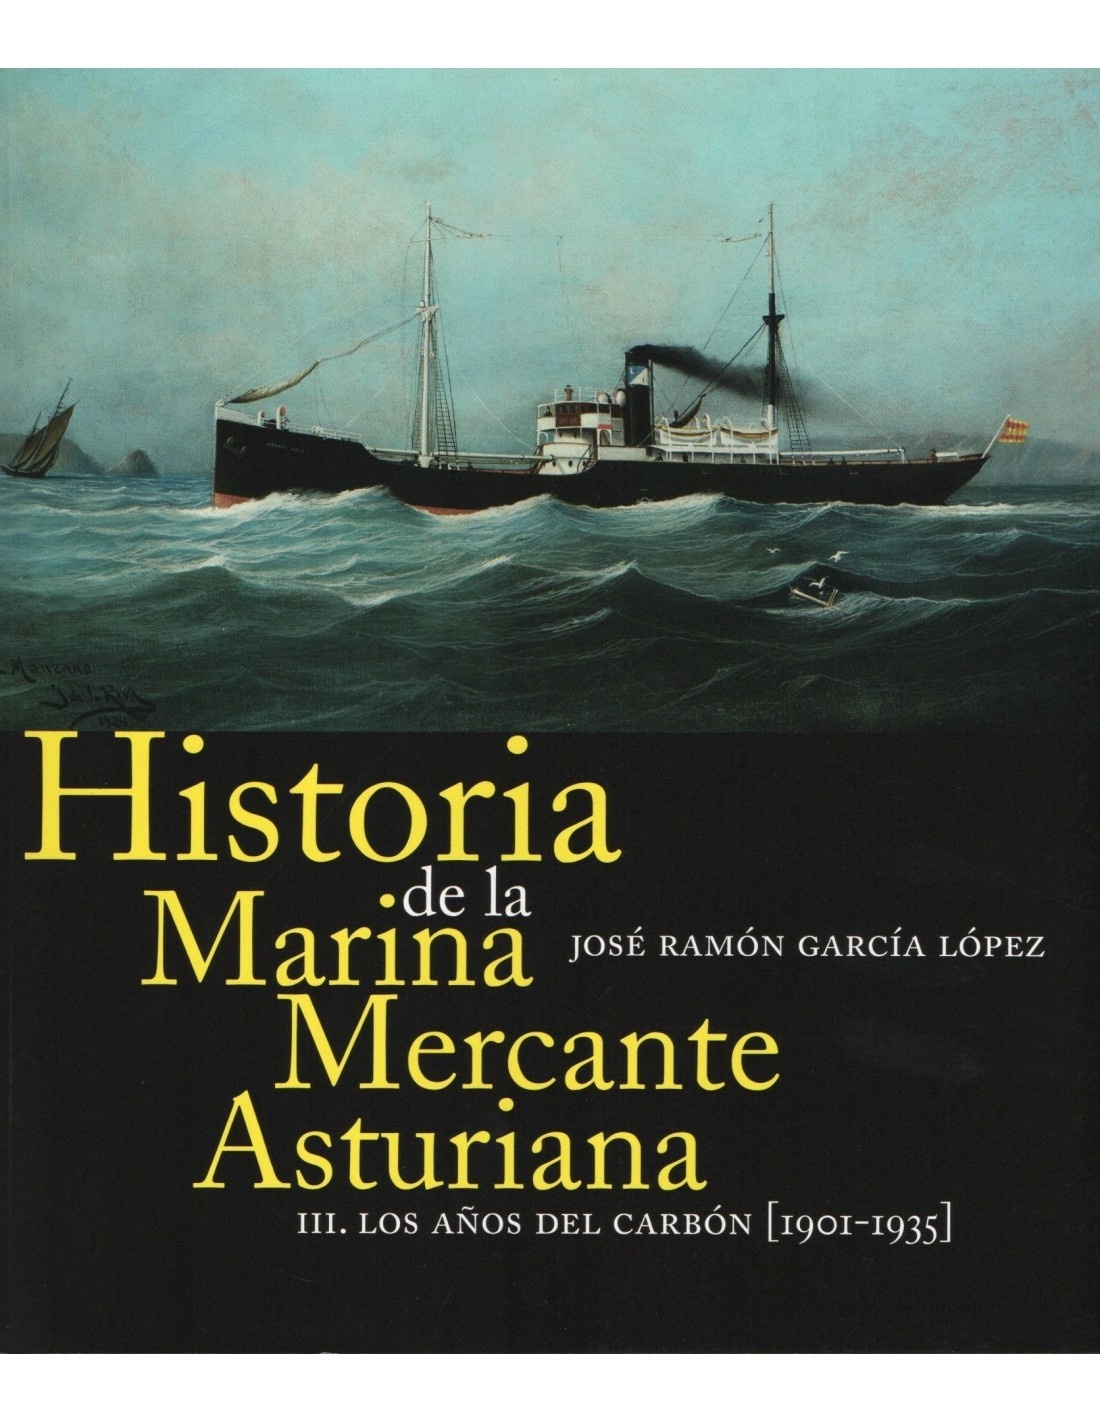 Historia de la Marina Mercante Asturiana. III Los años del carbón (1901-1935)